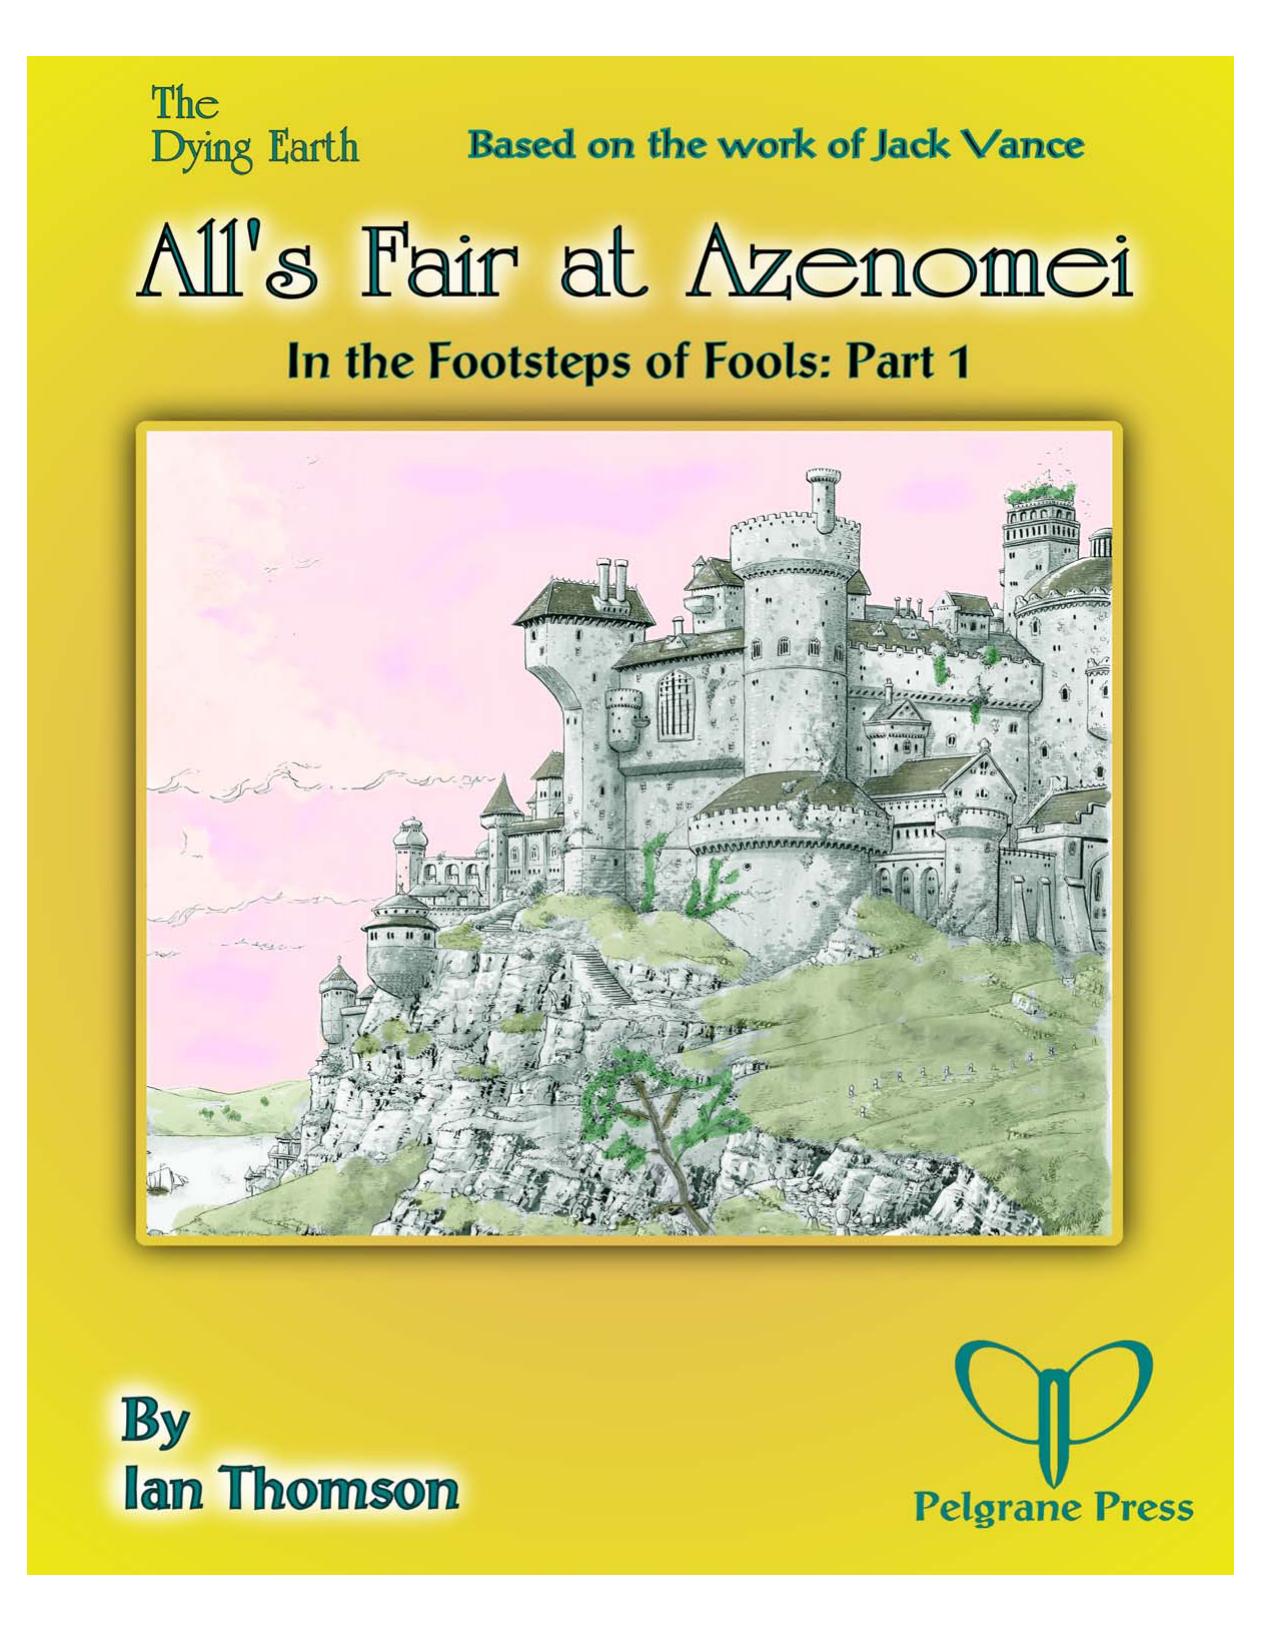 Azenomei Fair